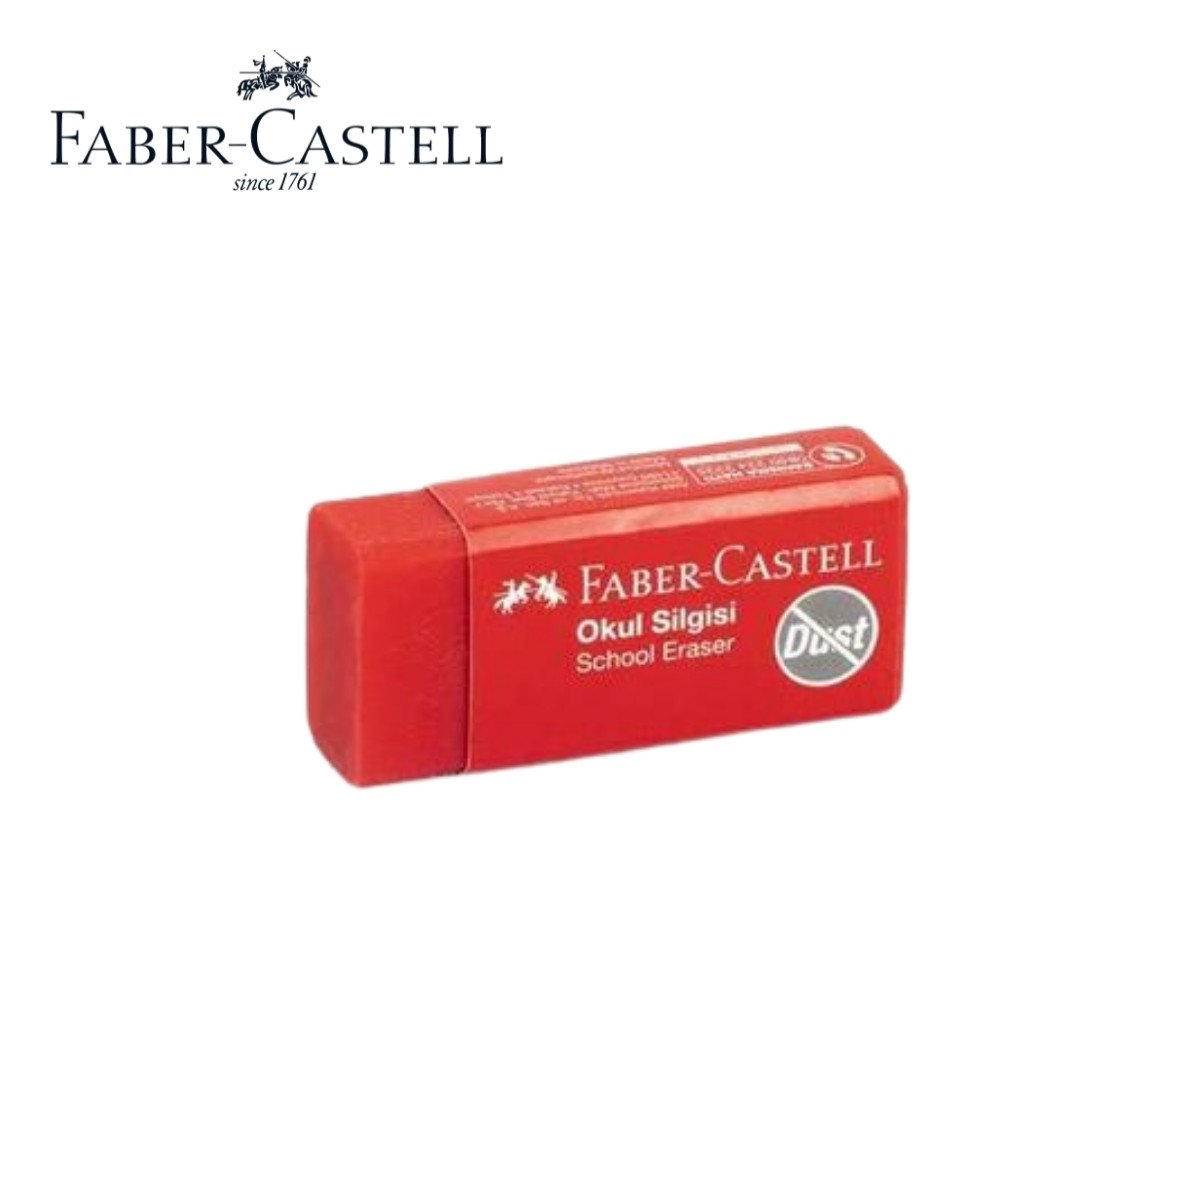 Faber Castell Okul Silgisi Kırmızı Orta